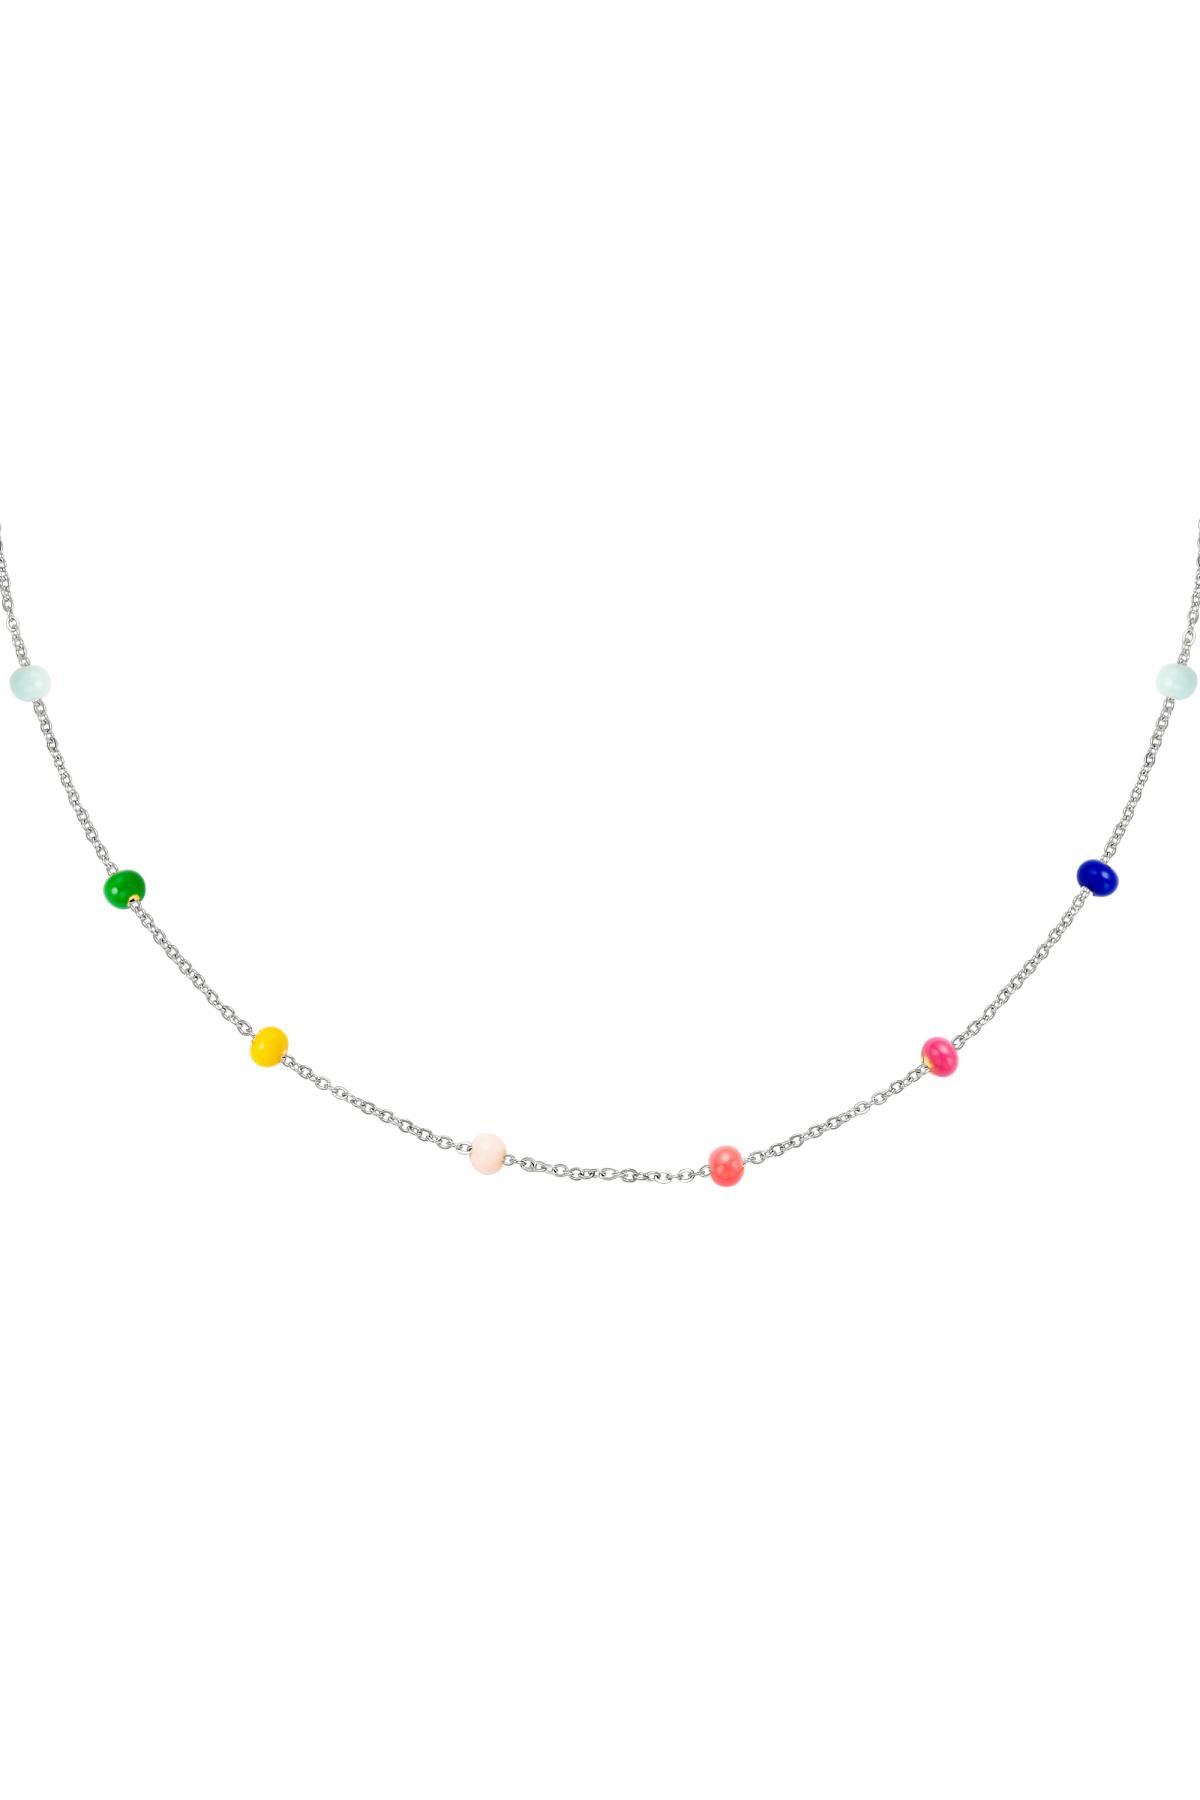 Collier perles colorées Argenté Acier inoxydable h5 